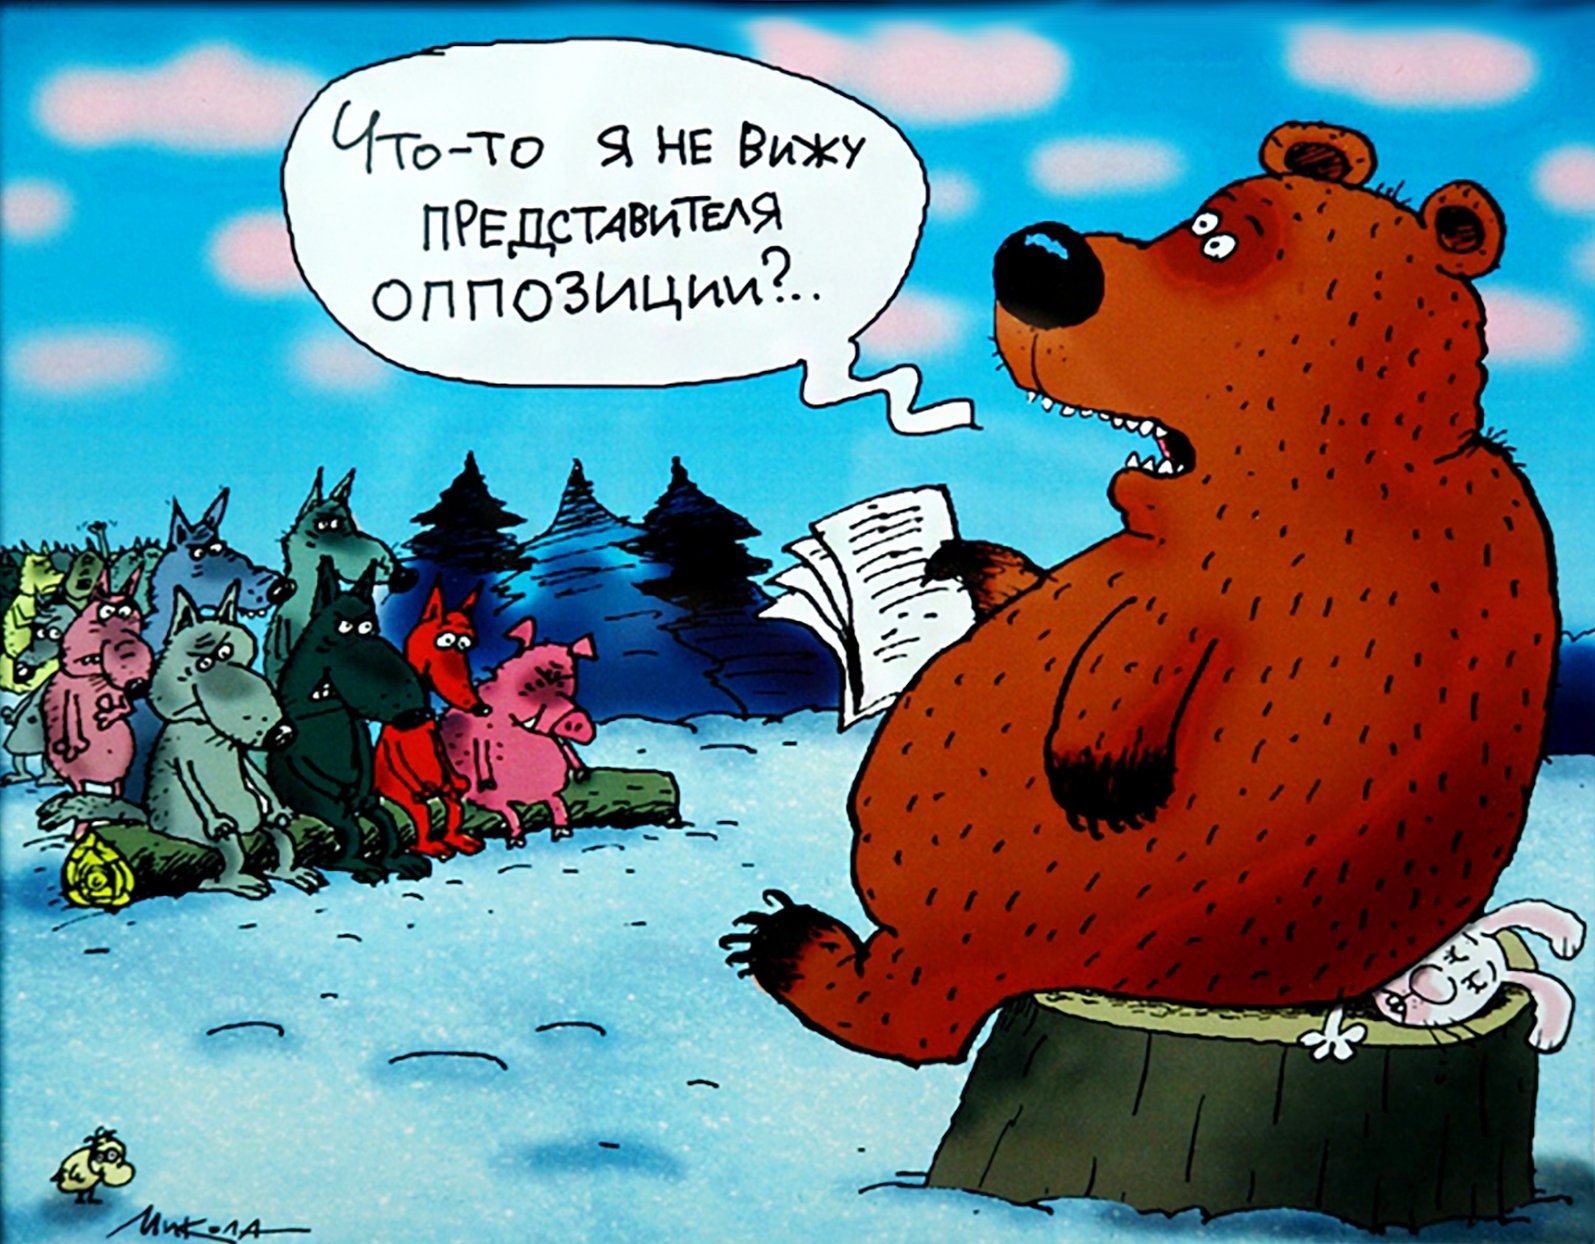 Новые русские санкции. Медведь карикатура. Шутки про медведя. Анекдоты про медведей смешные. Шутки про медведя в России.